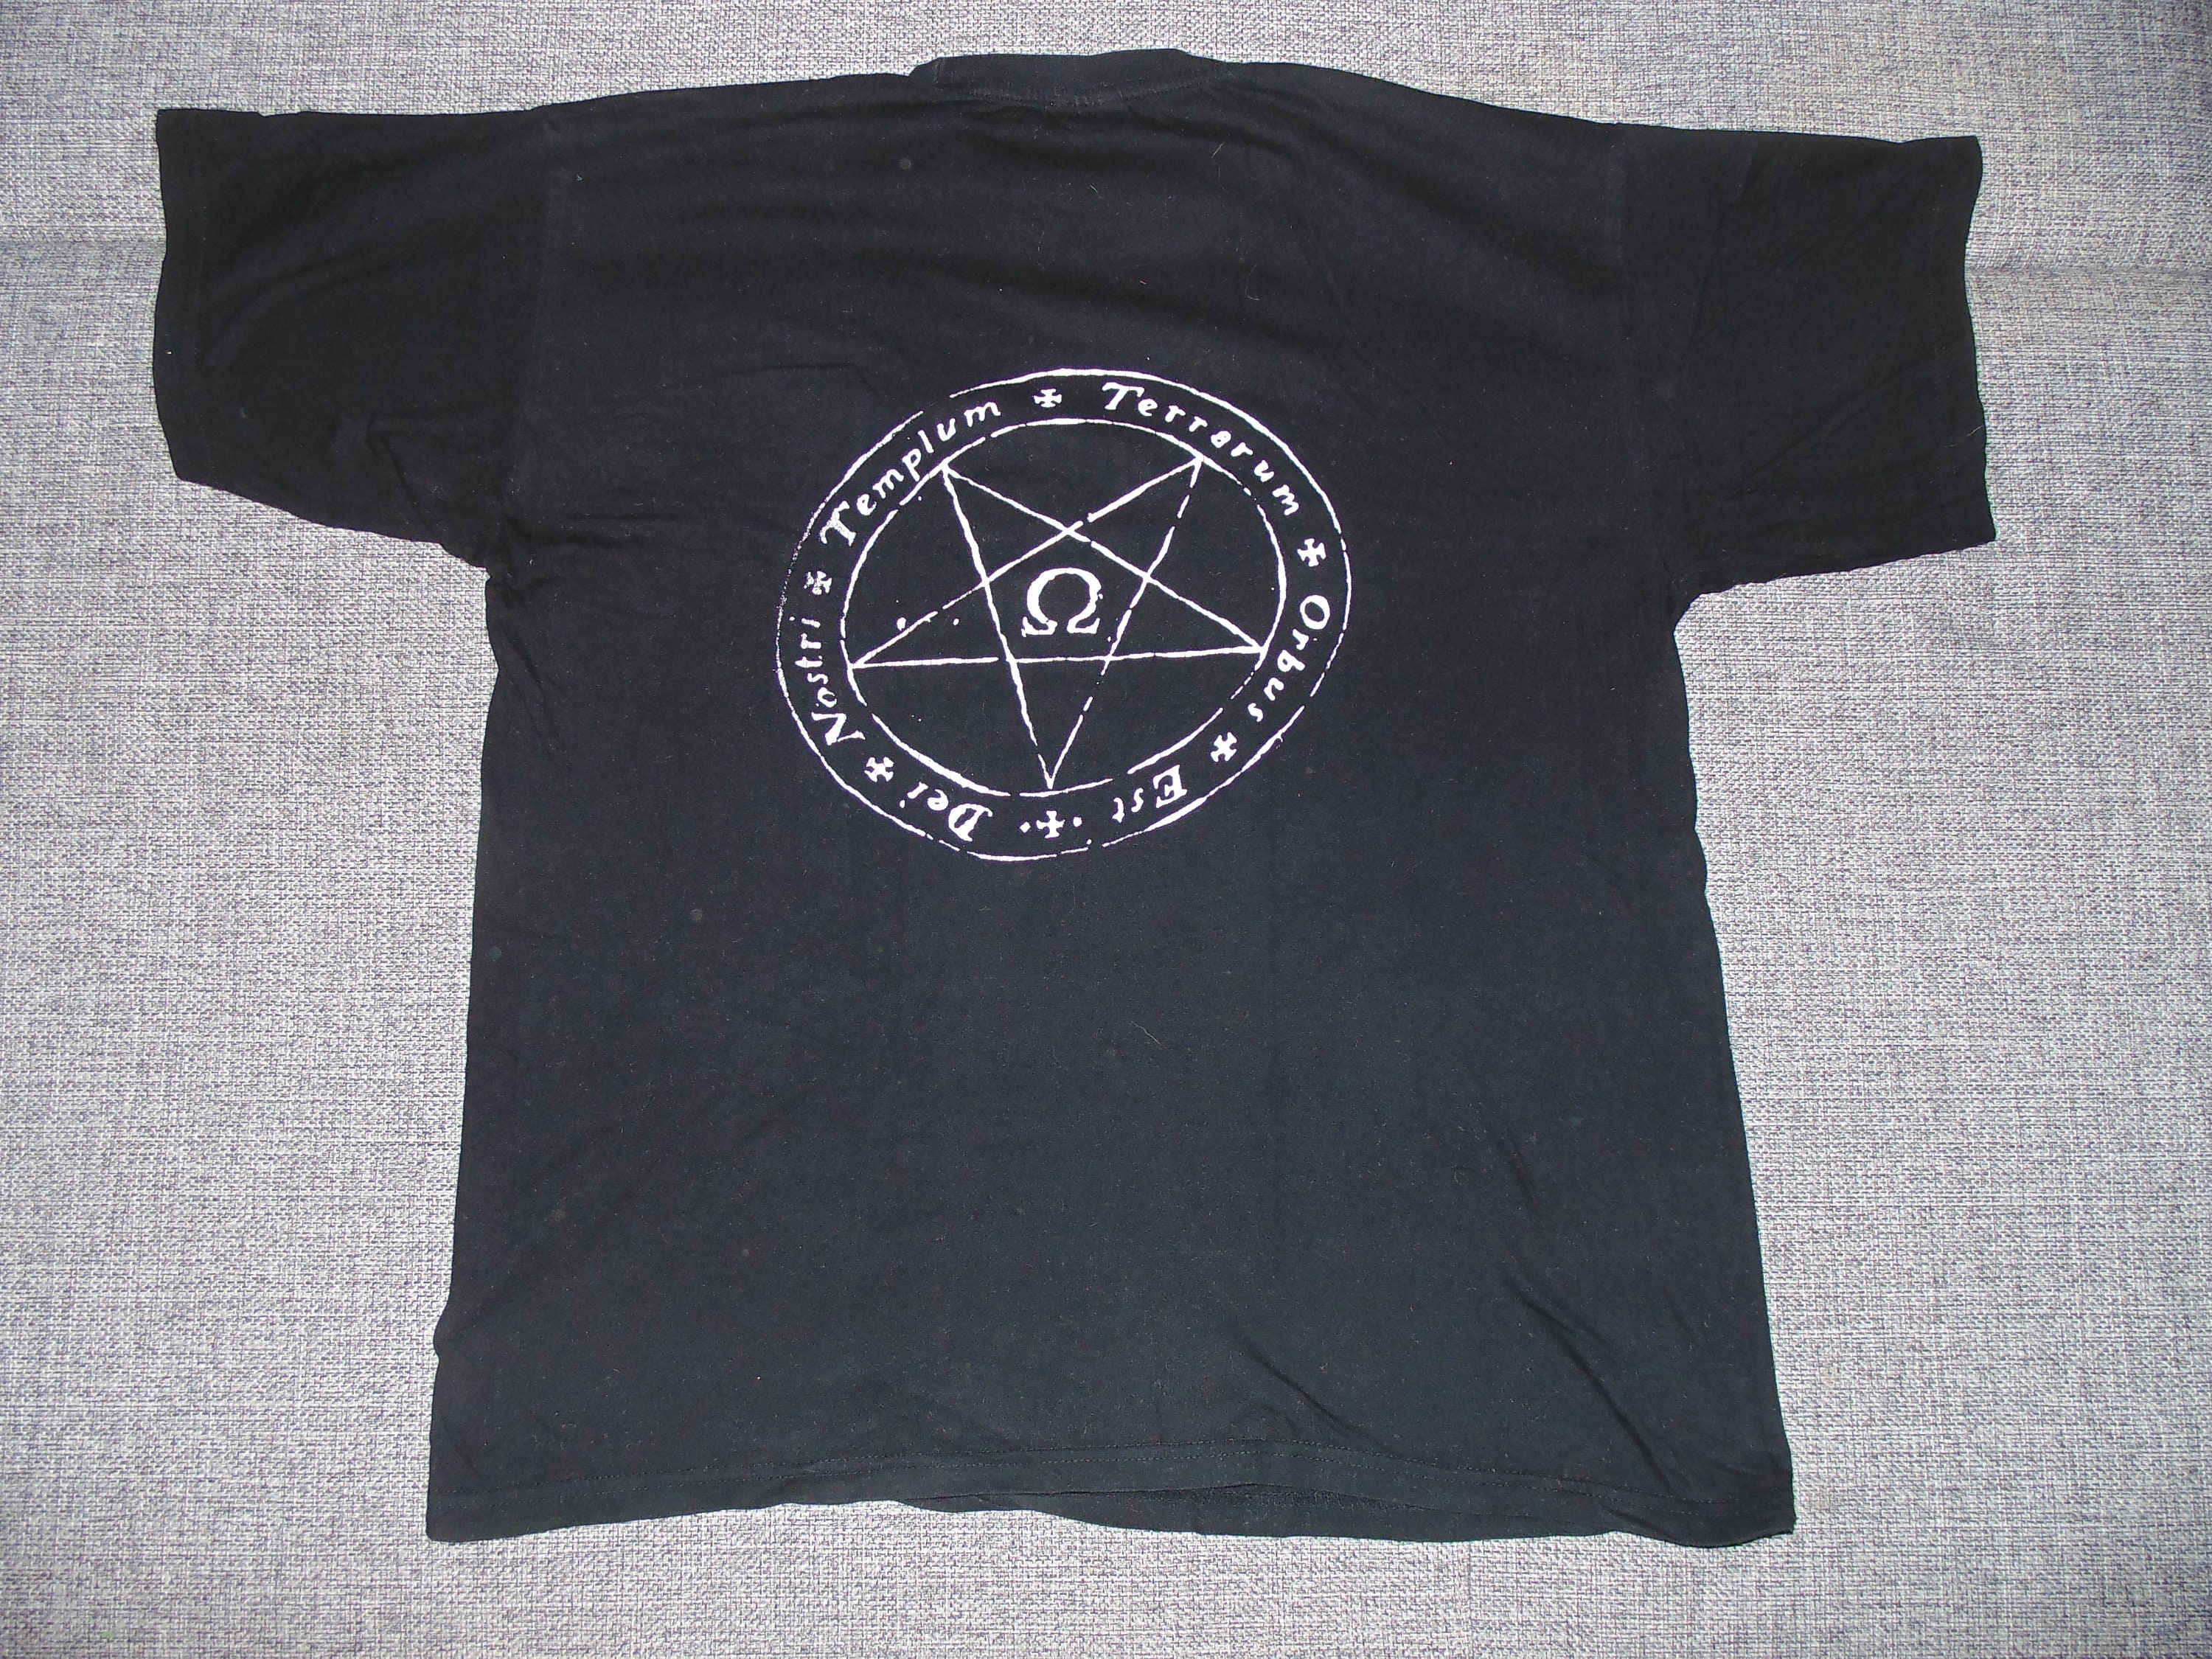 Deathspell Omega shirt XL 00s black metal | Etsy